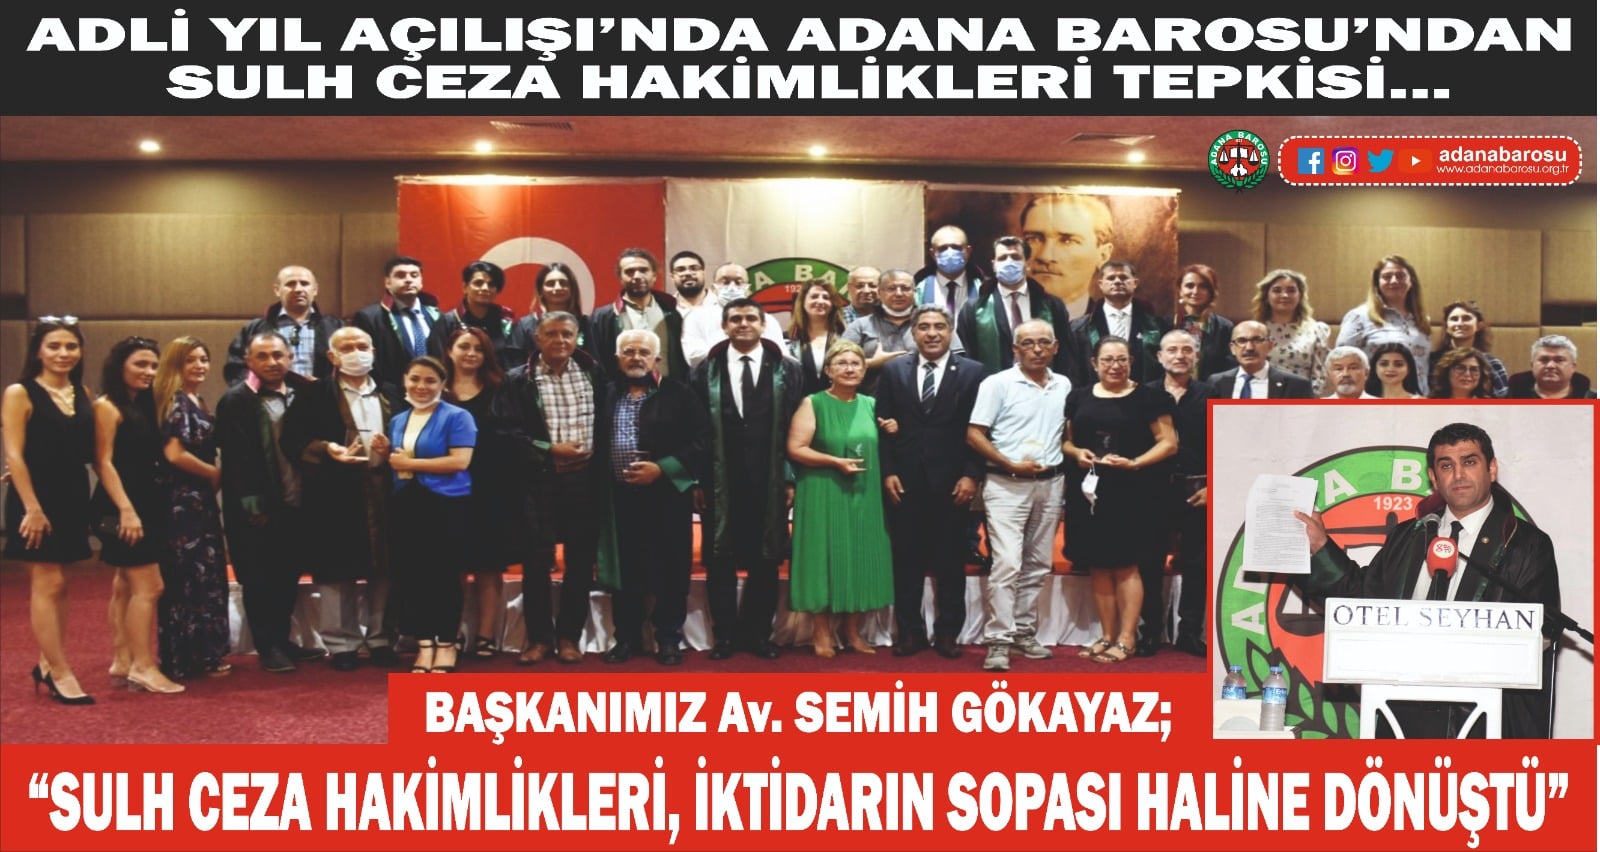 Adli Yıl Açılışı’nda Adana Barosu’ndan Sulh Ceza Hakimlikleri tepkisi…